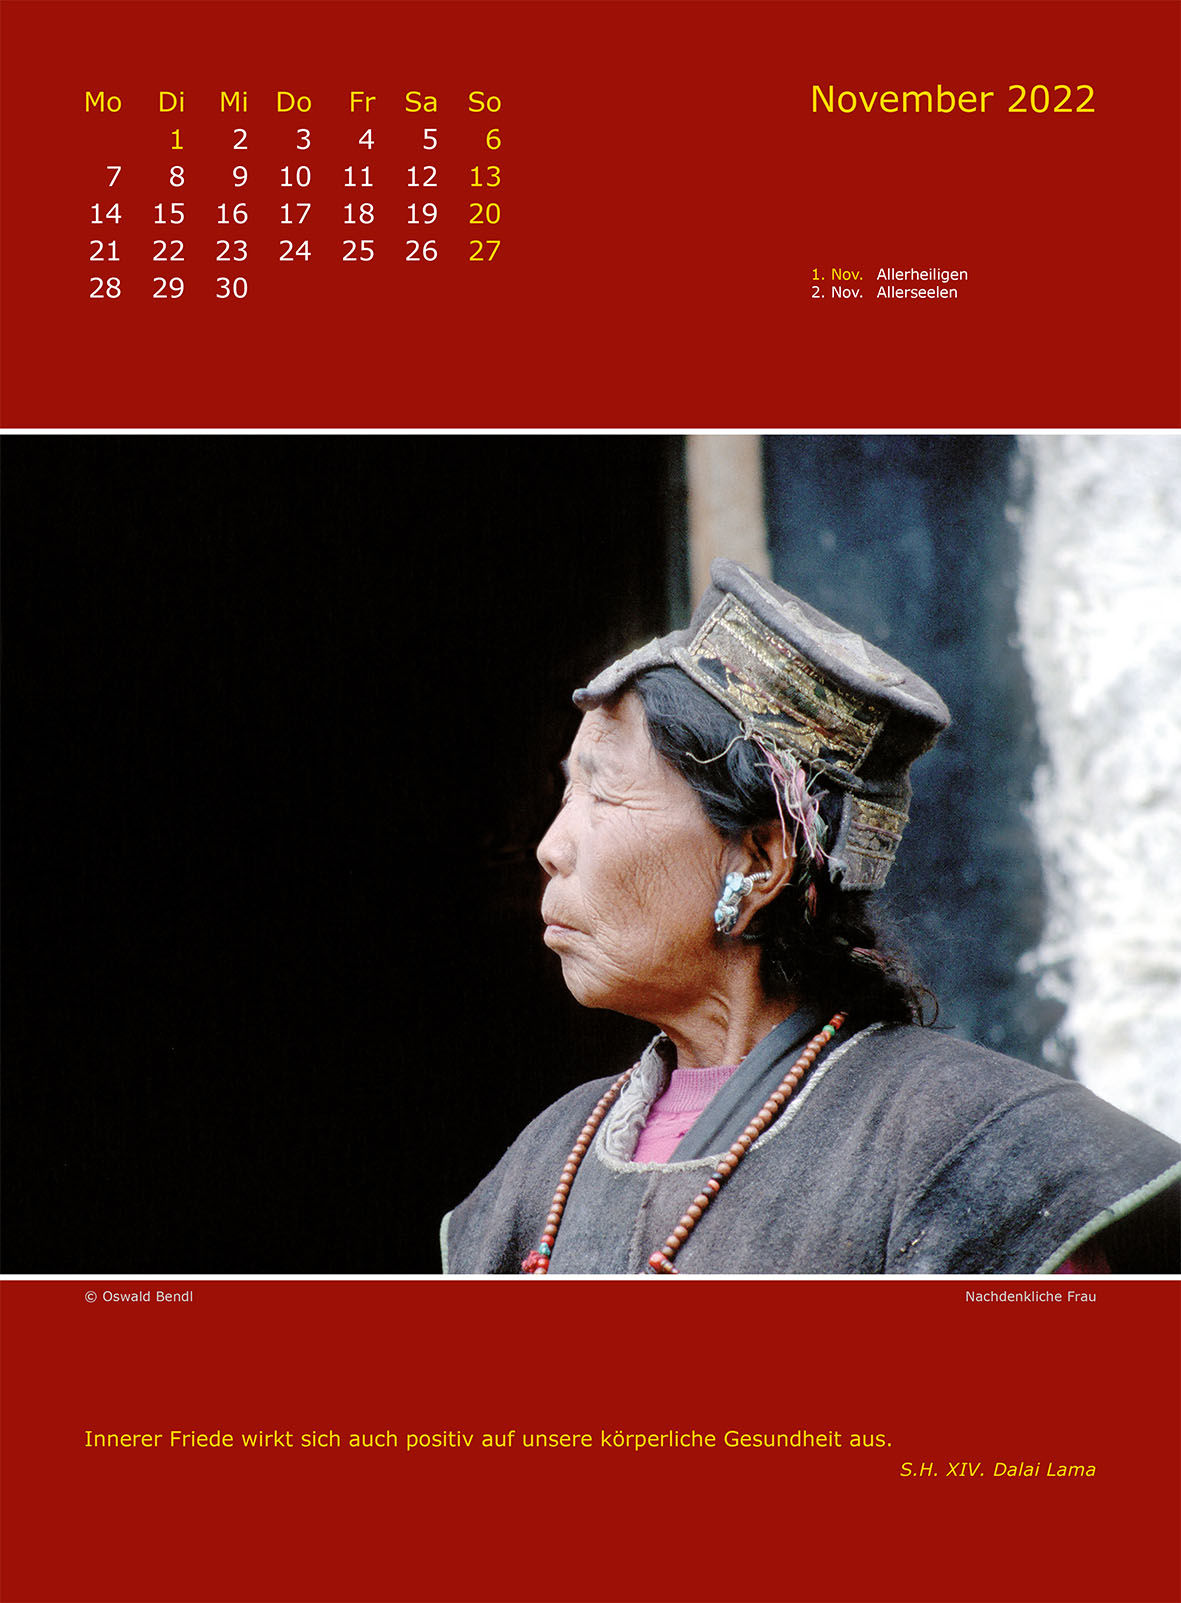 Save Tibet Kalender 2022